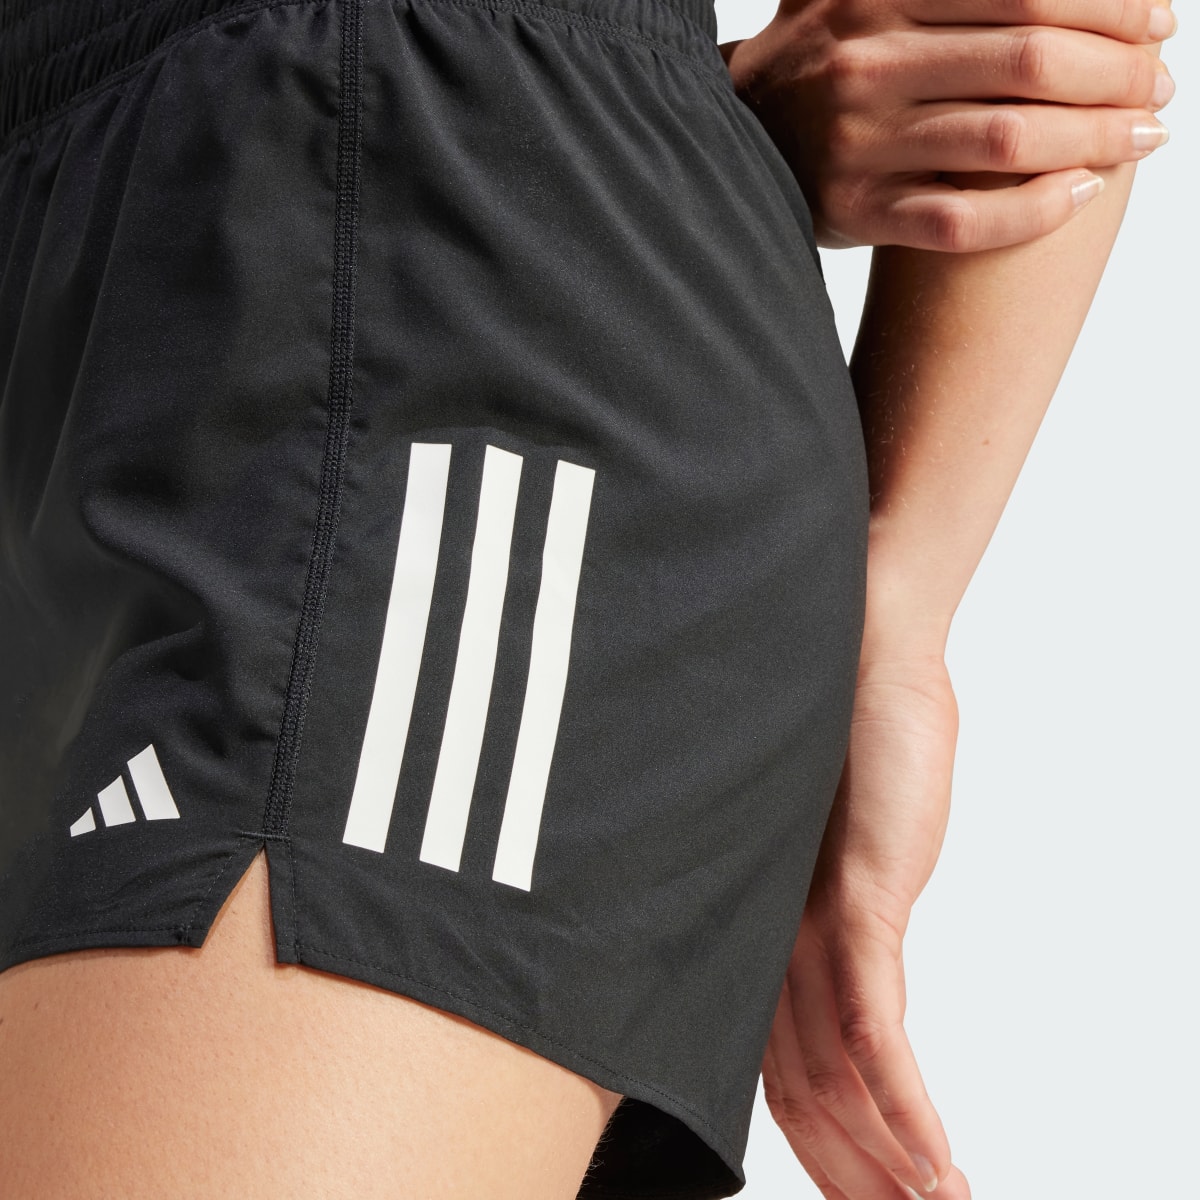 Adidas Own the Run Shorts. 6